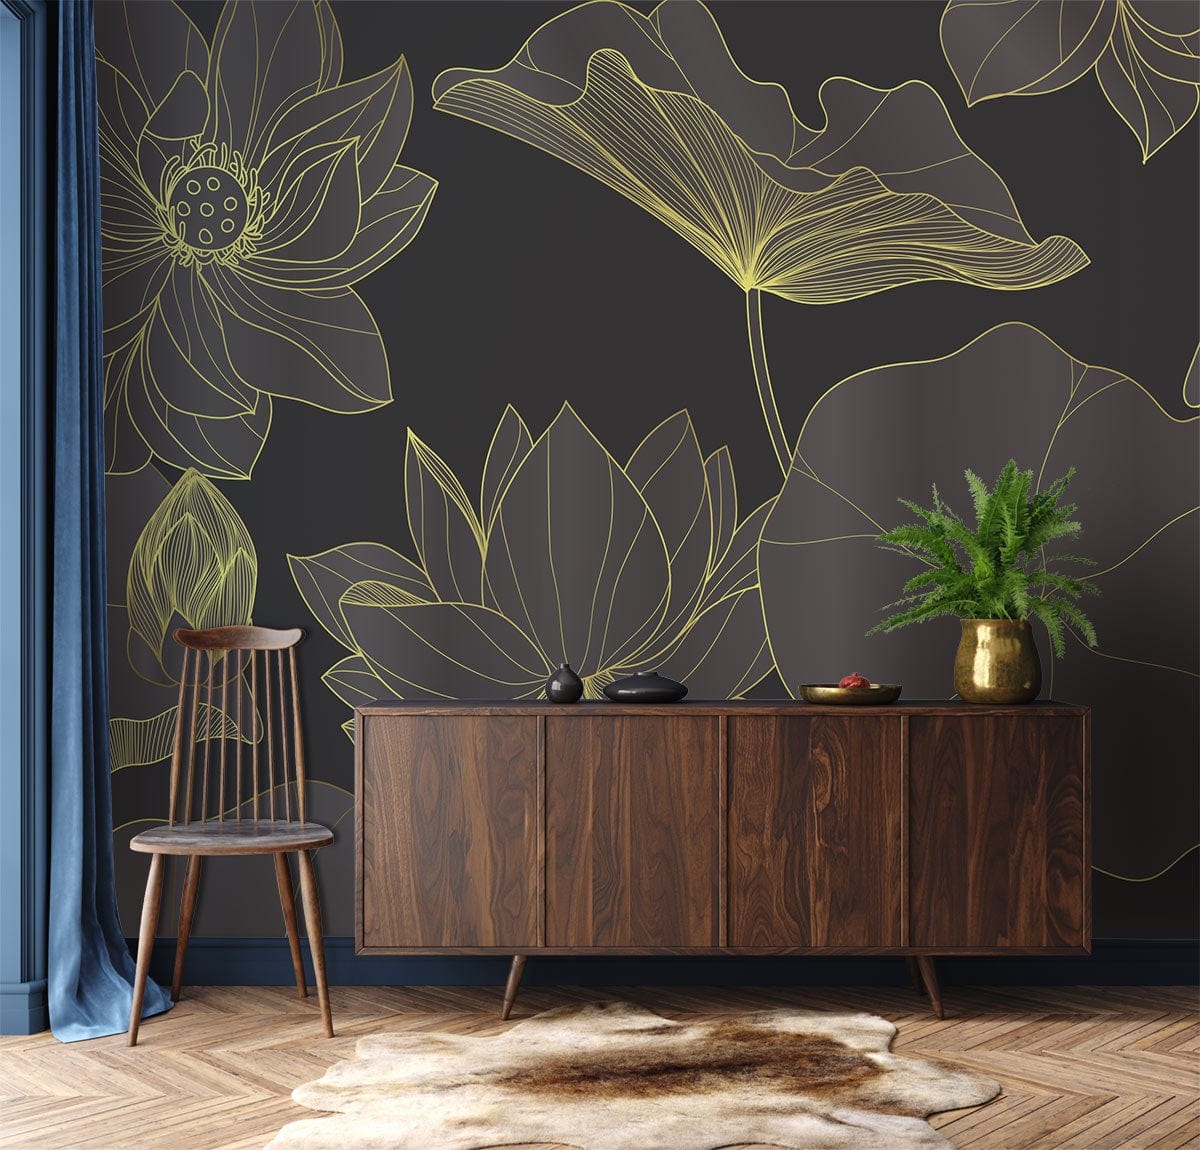 Dark Golden Lotus Wall Mural for Living Room